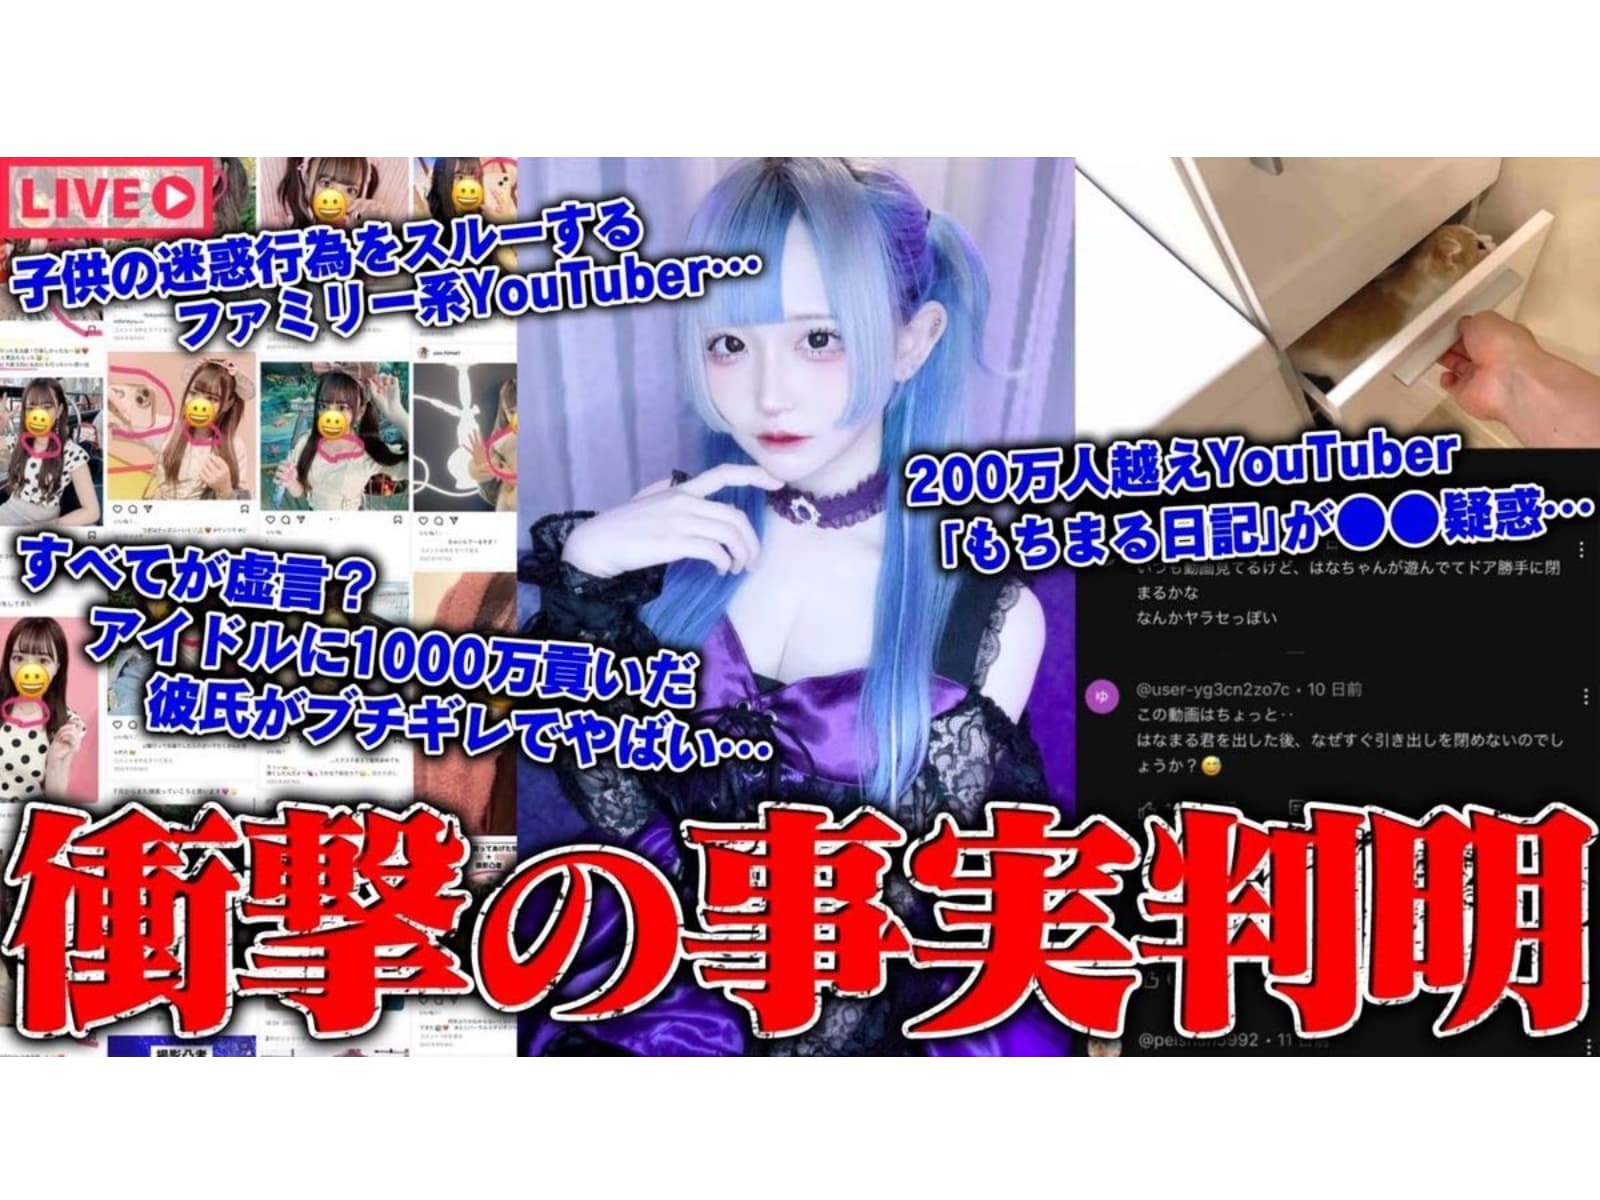 女性アイドルから約1000万円の被害を受けた男性、ストーカー扱いされ猛反撃。所属事務所も謝罪公表